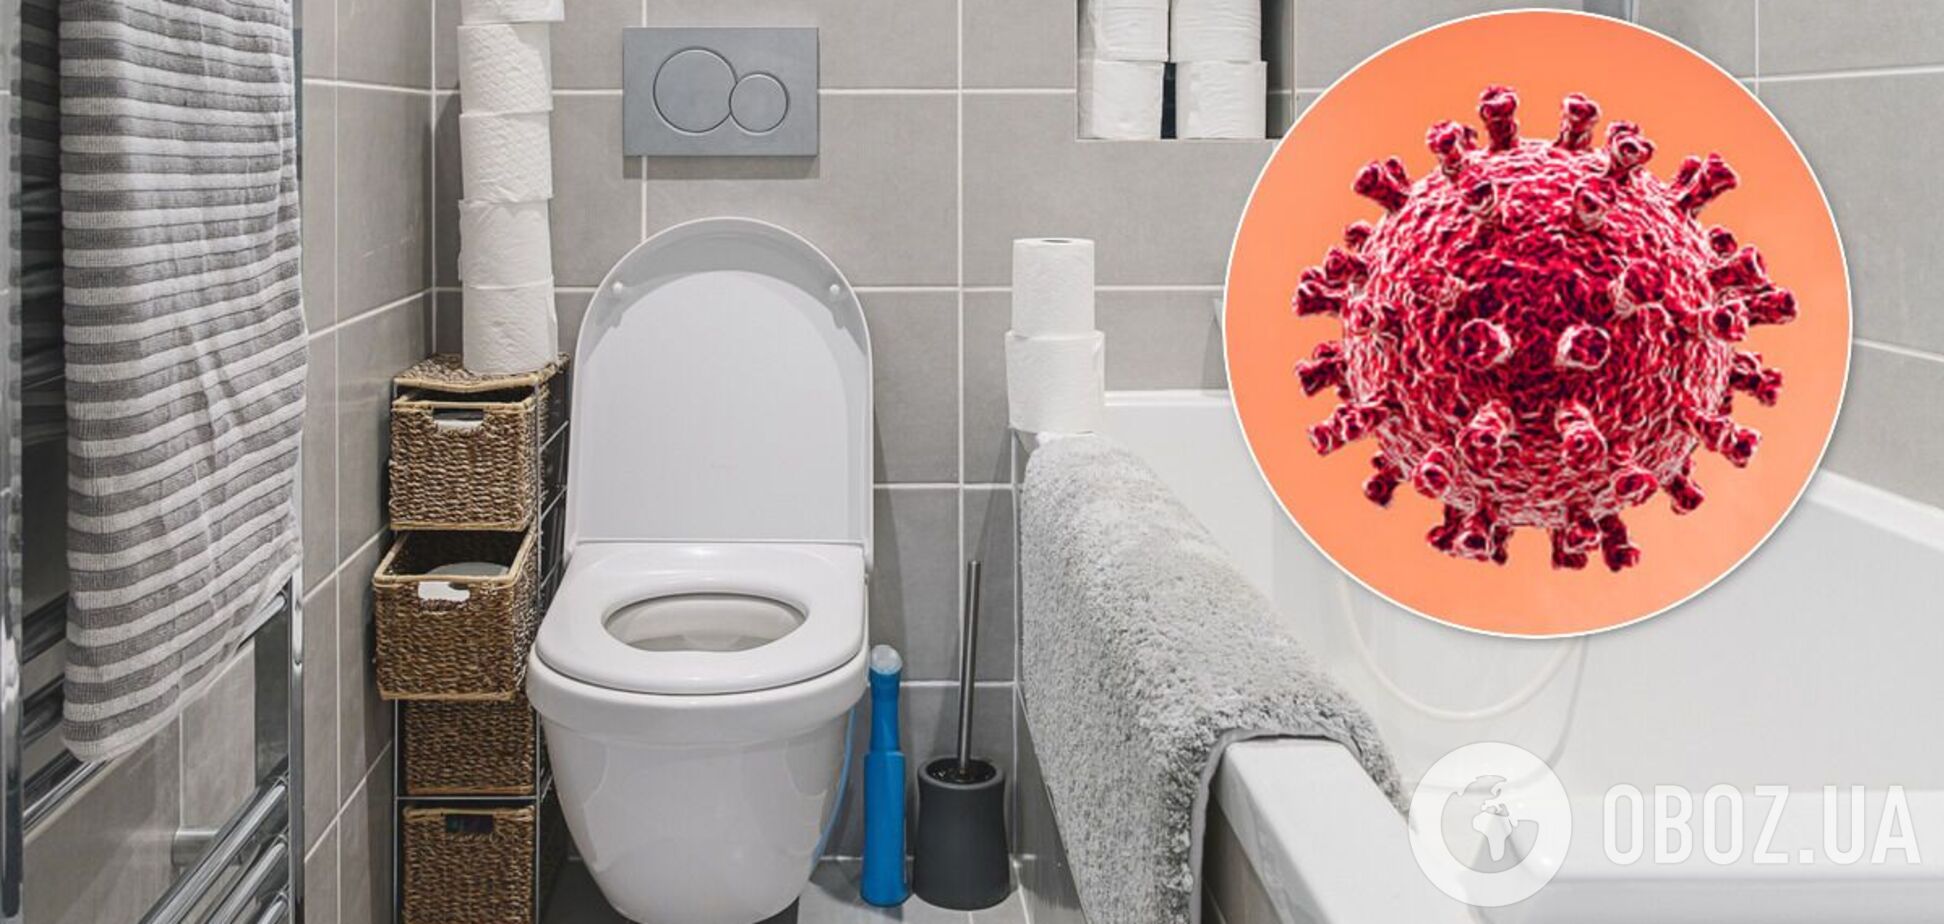 Коронавірус може поширюватися через каналізацію